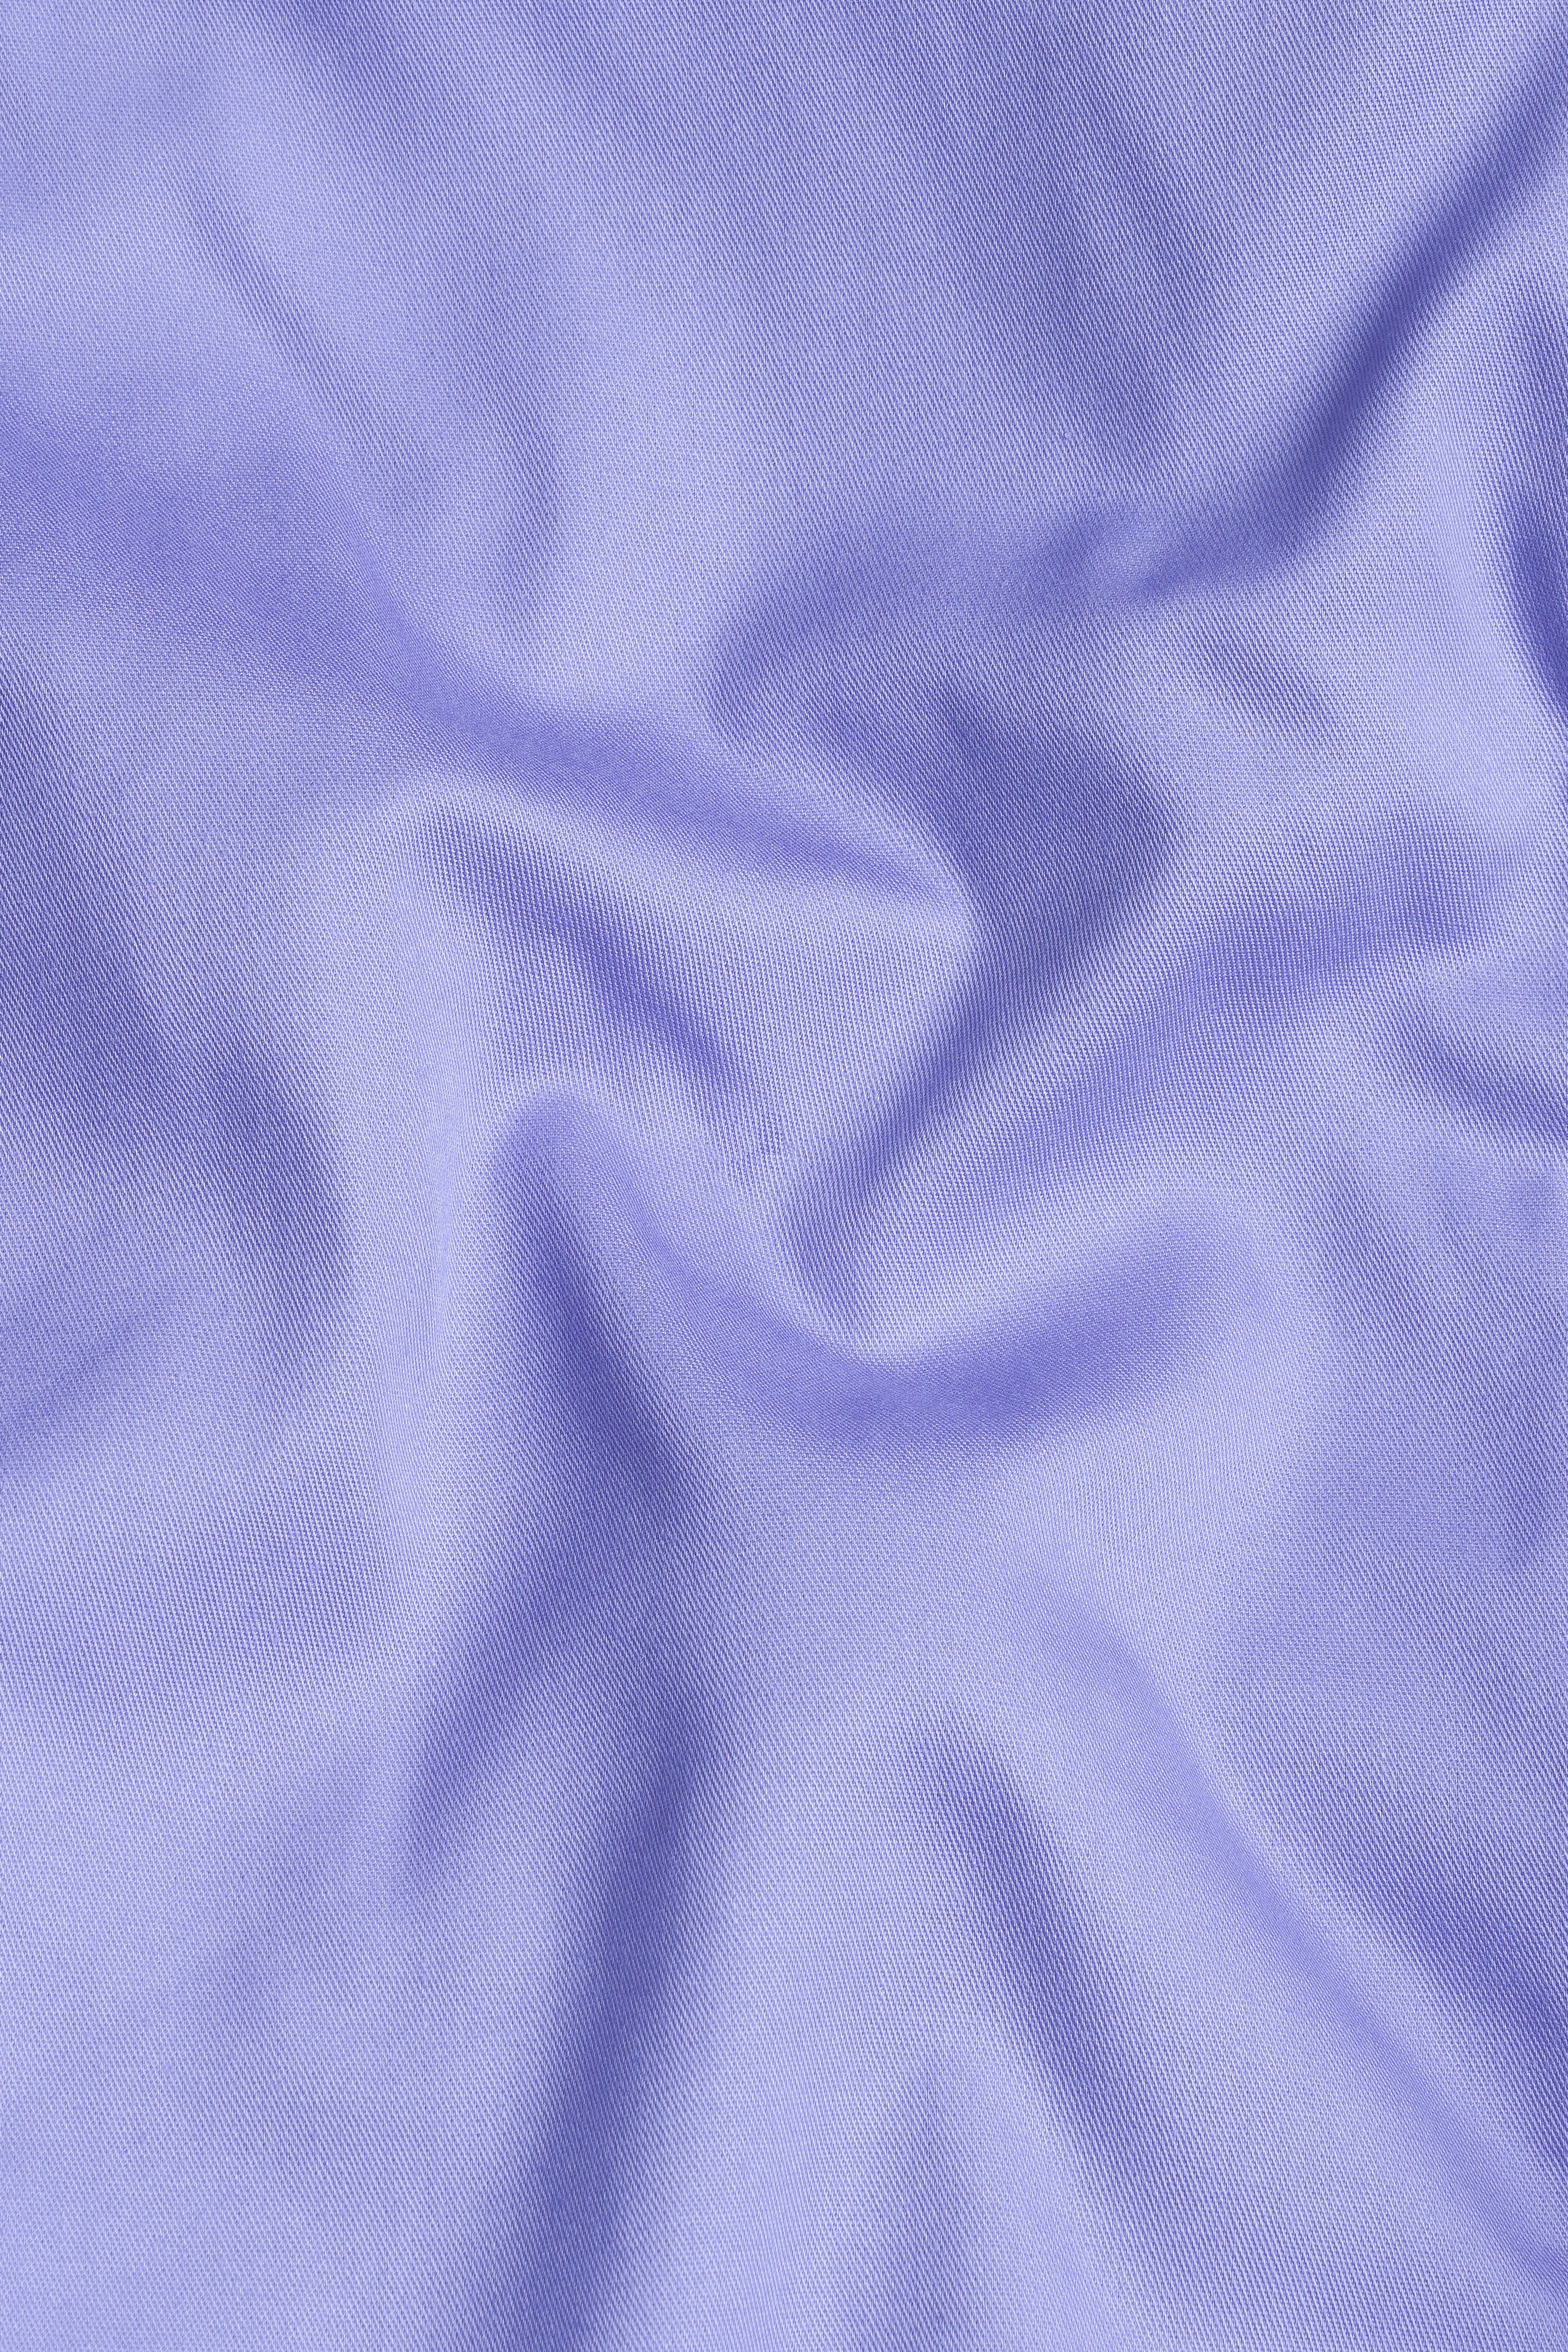 Chetwode Purple Premium Cotton Pant T3049-28, T3049-30, T3049-32, T3049-34, T3049-36, T3049-38, T3049-40, T3049-42, T3049-44